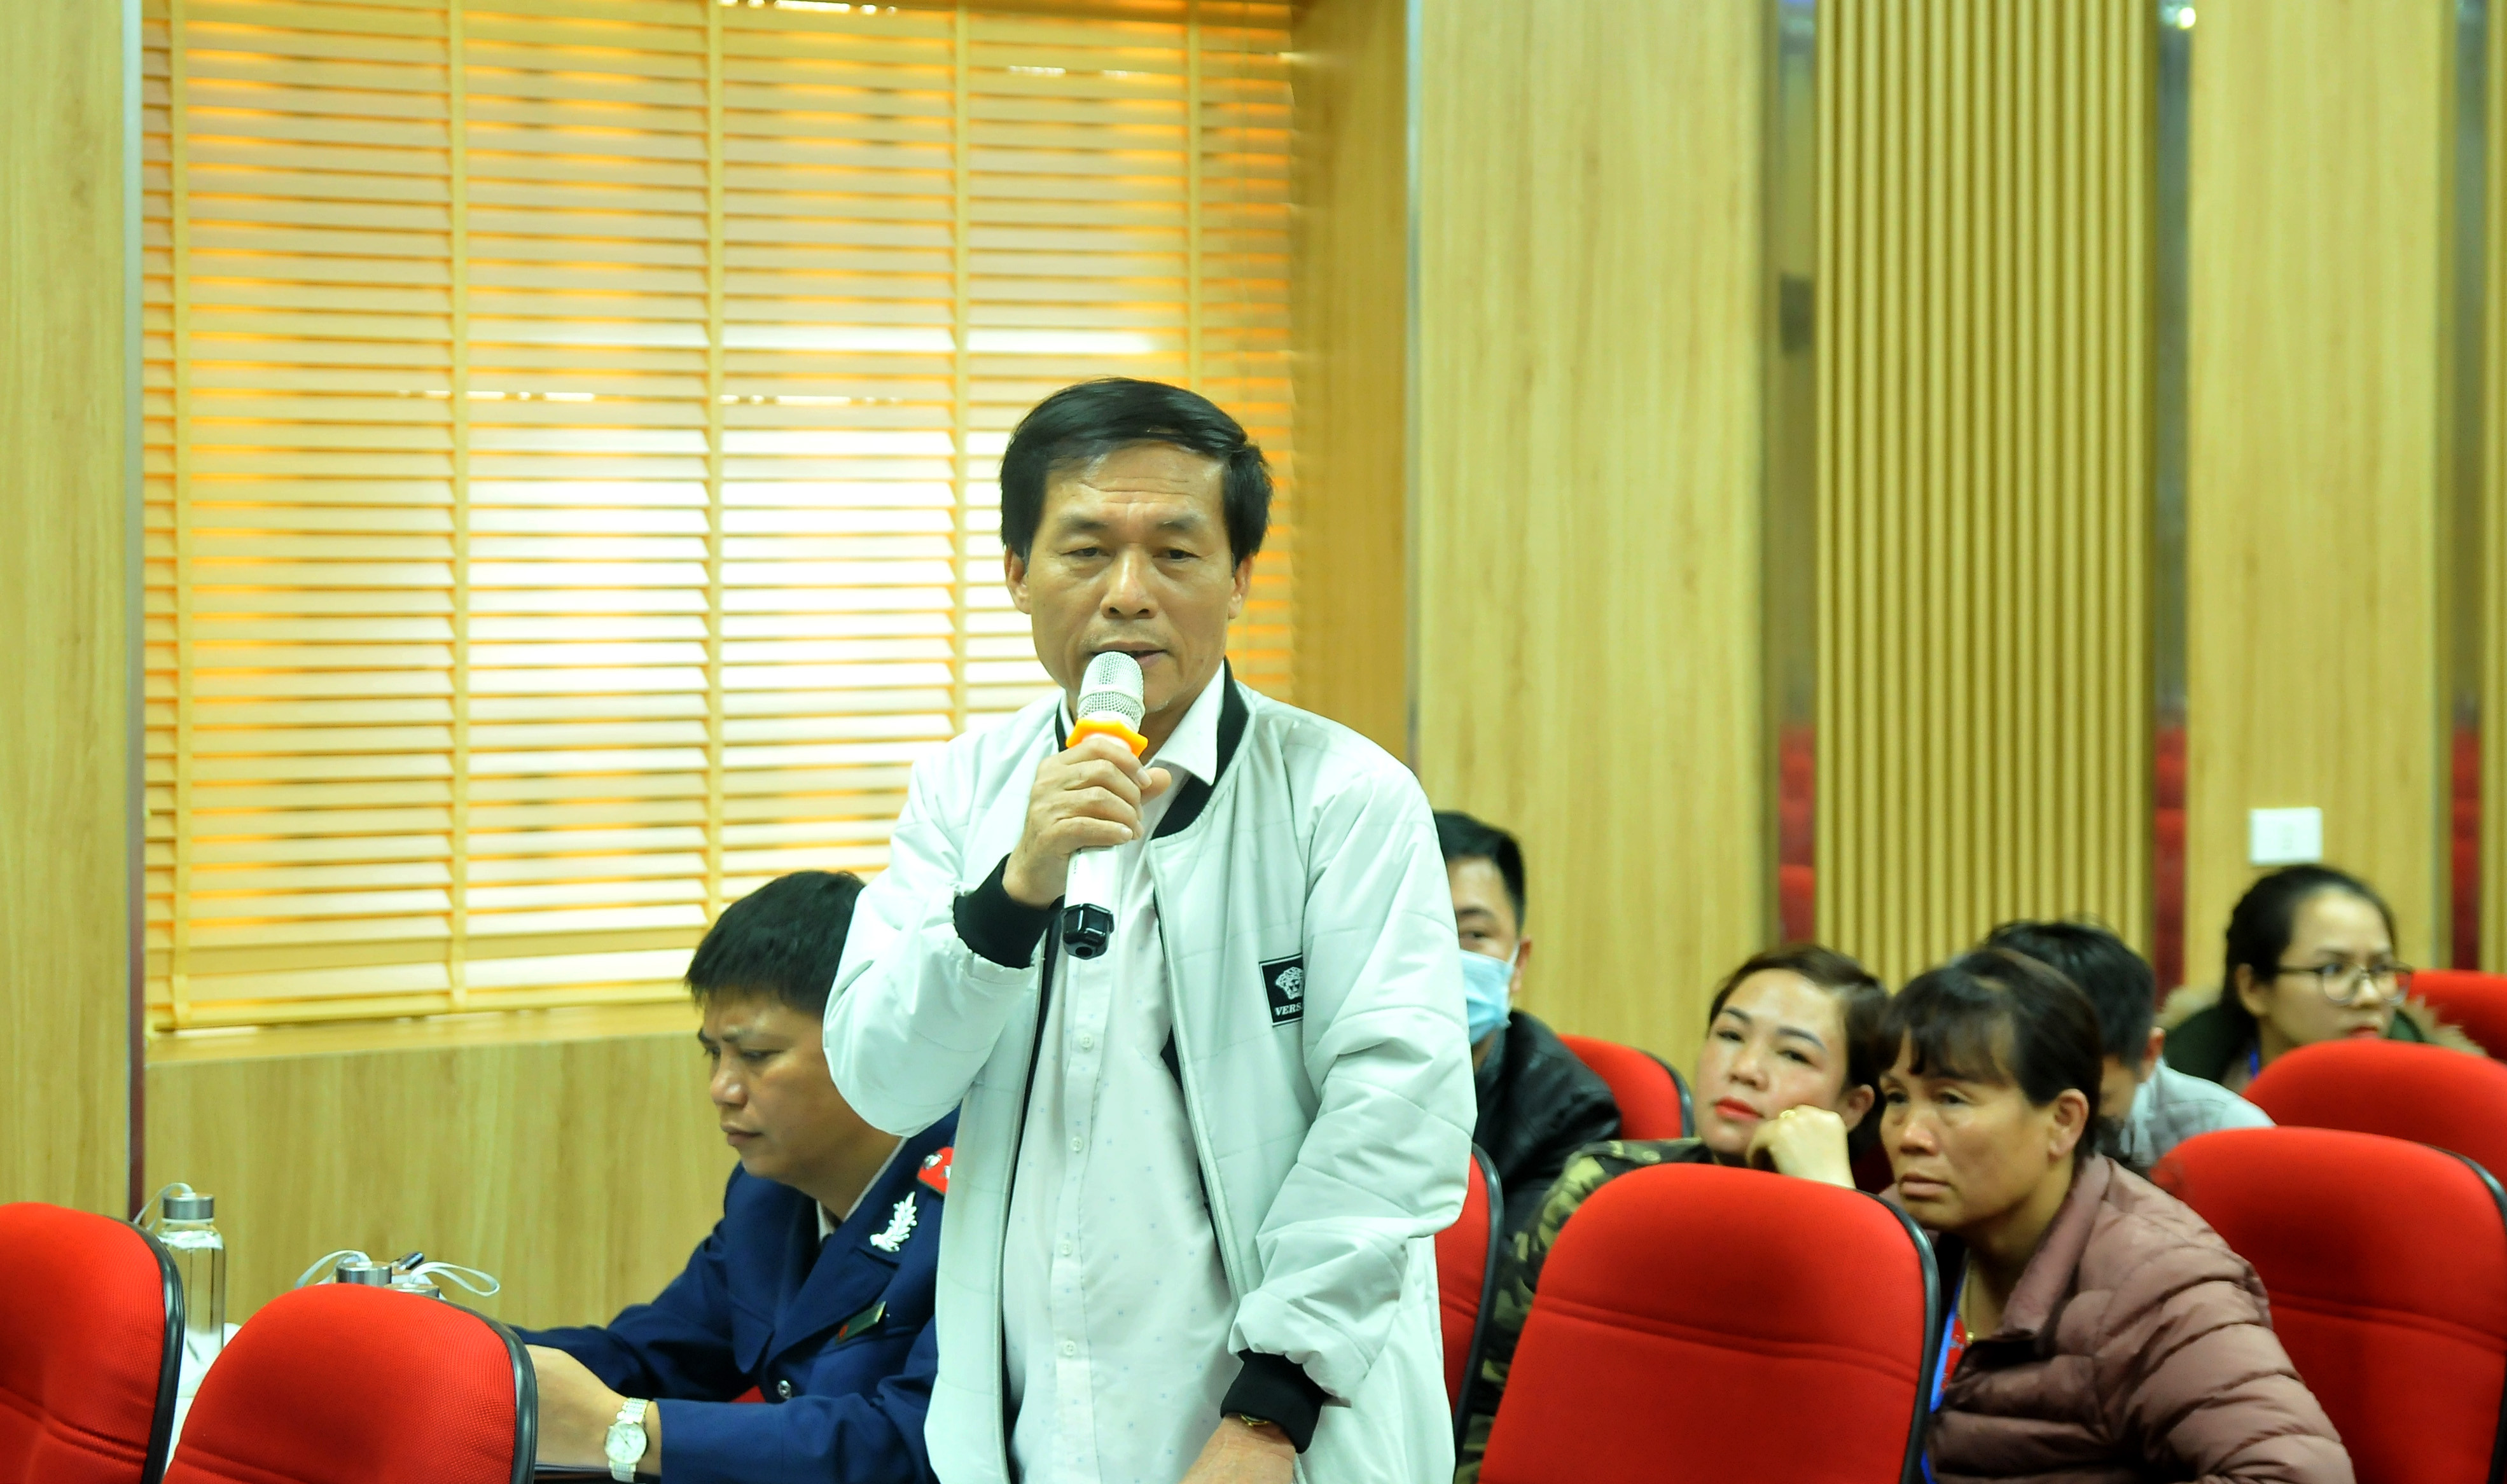 Ông Nguyễn Văn Hùng - Chủ tịch Hiệp hội vận tải Nghệ An kiến nghị lãnh đạo Sở GTVT xử lý dứt điểm tình trạng xe dù, xe vượt tuyến để đảm bảo công bằng cho các doanh nghiệp đã đăng ký tuyến cố định. Ảnh: TĐ